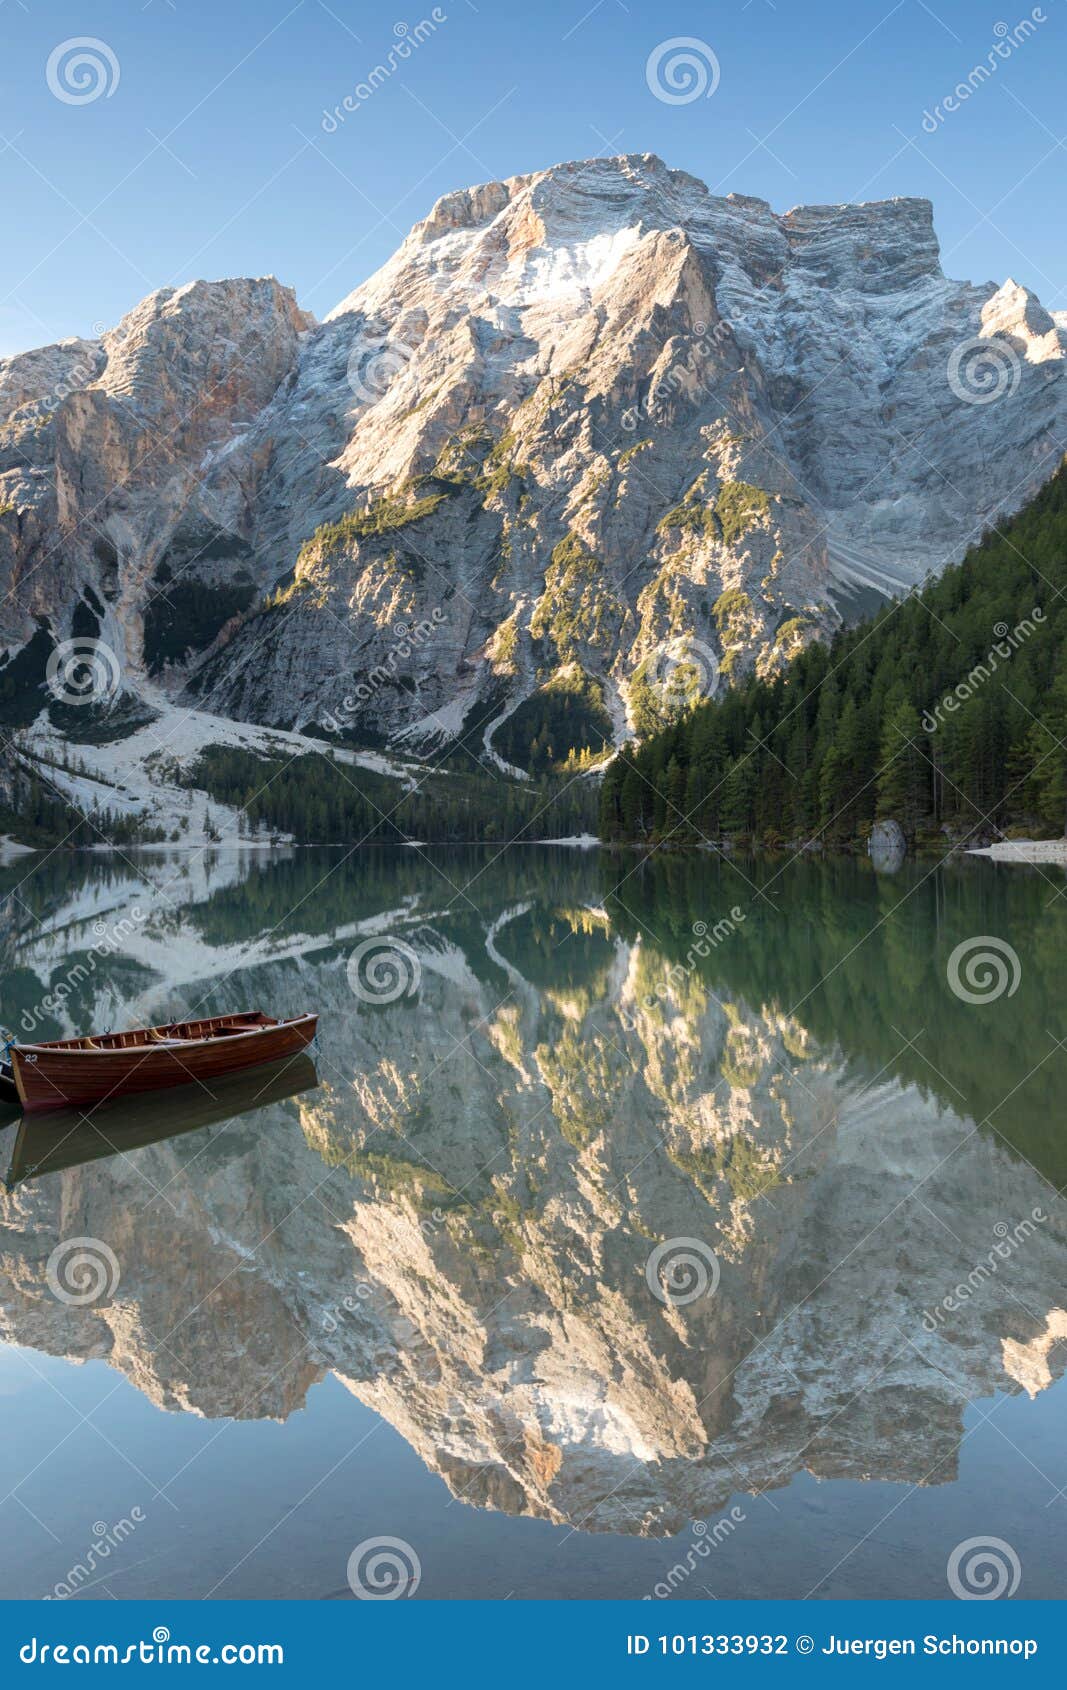 seekofel reflecting at lake prags